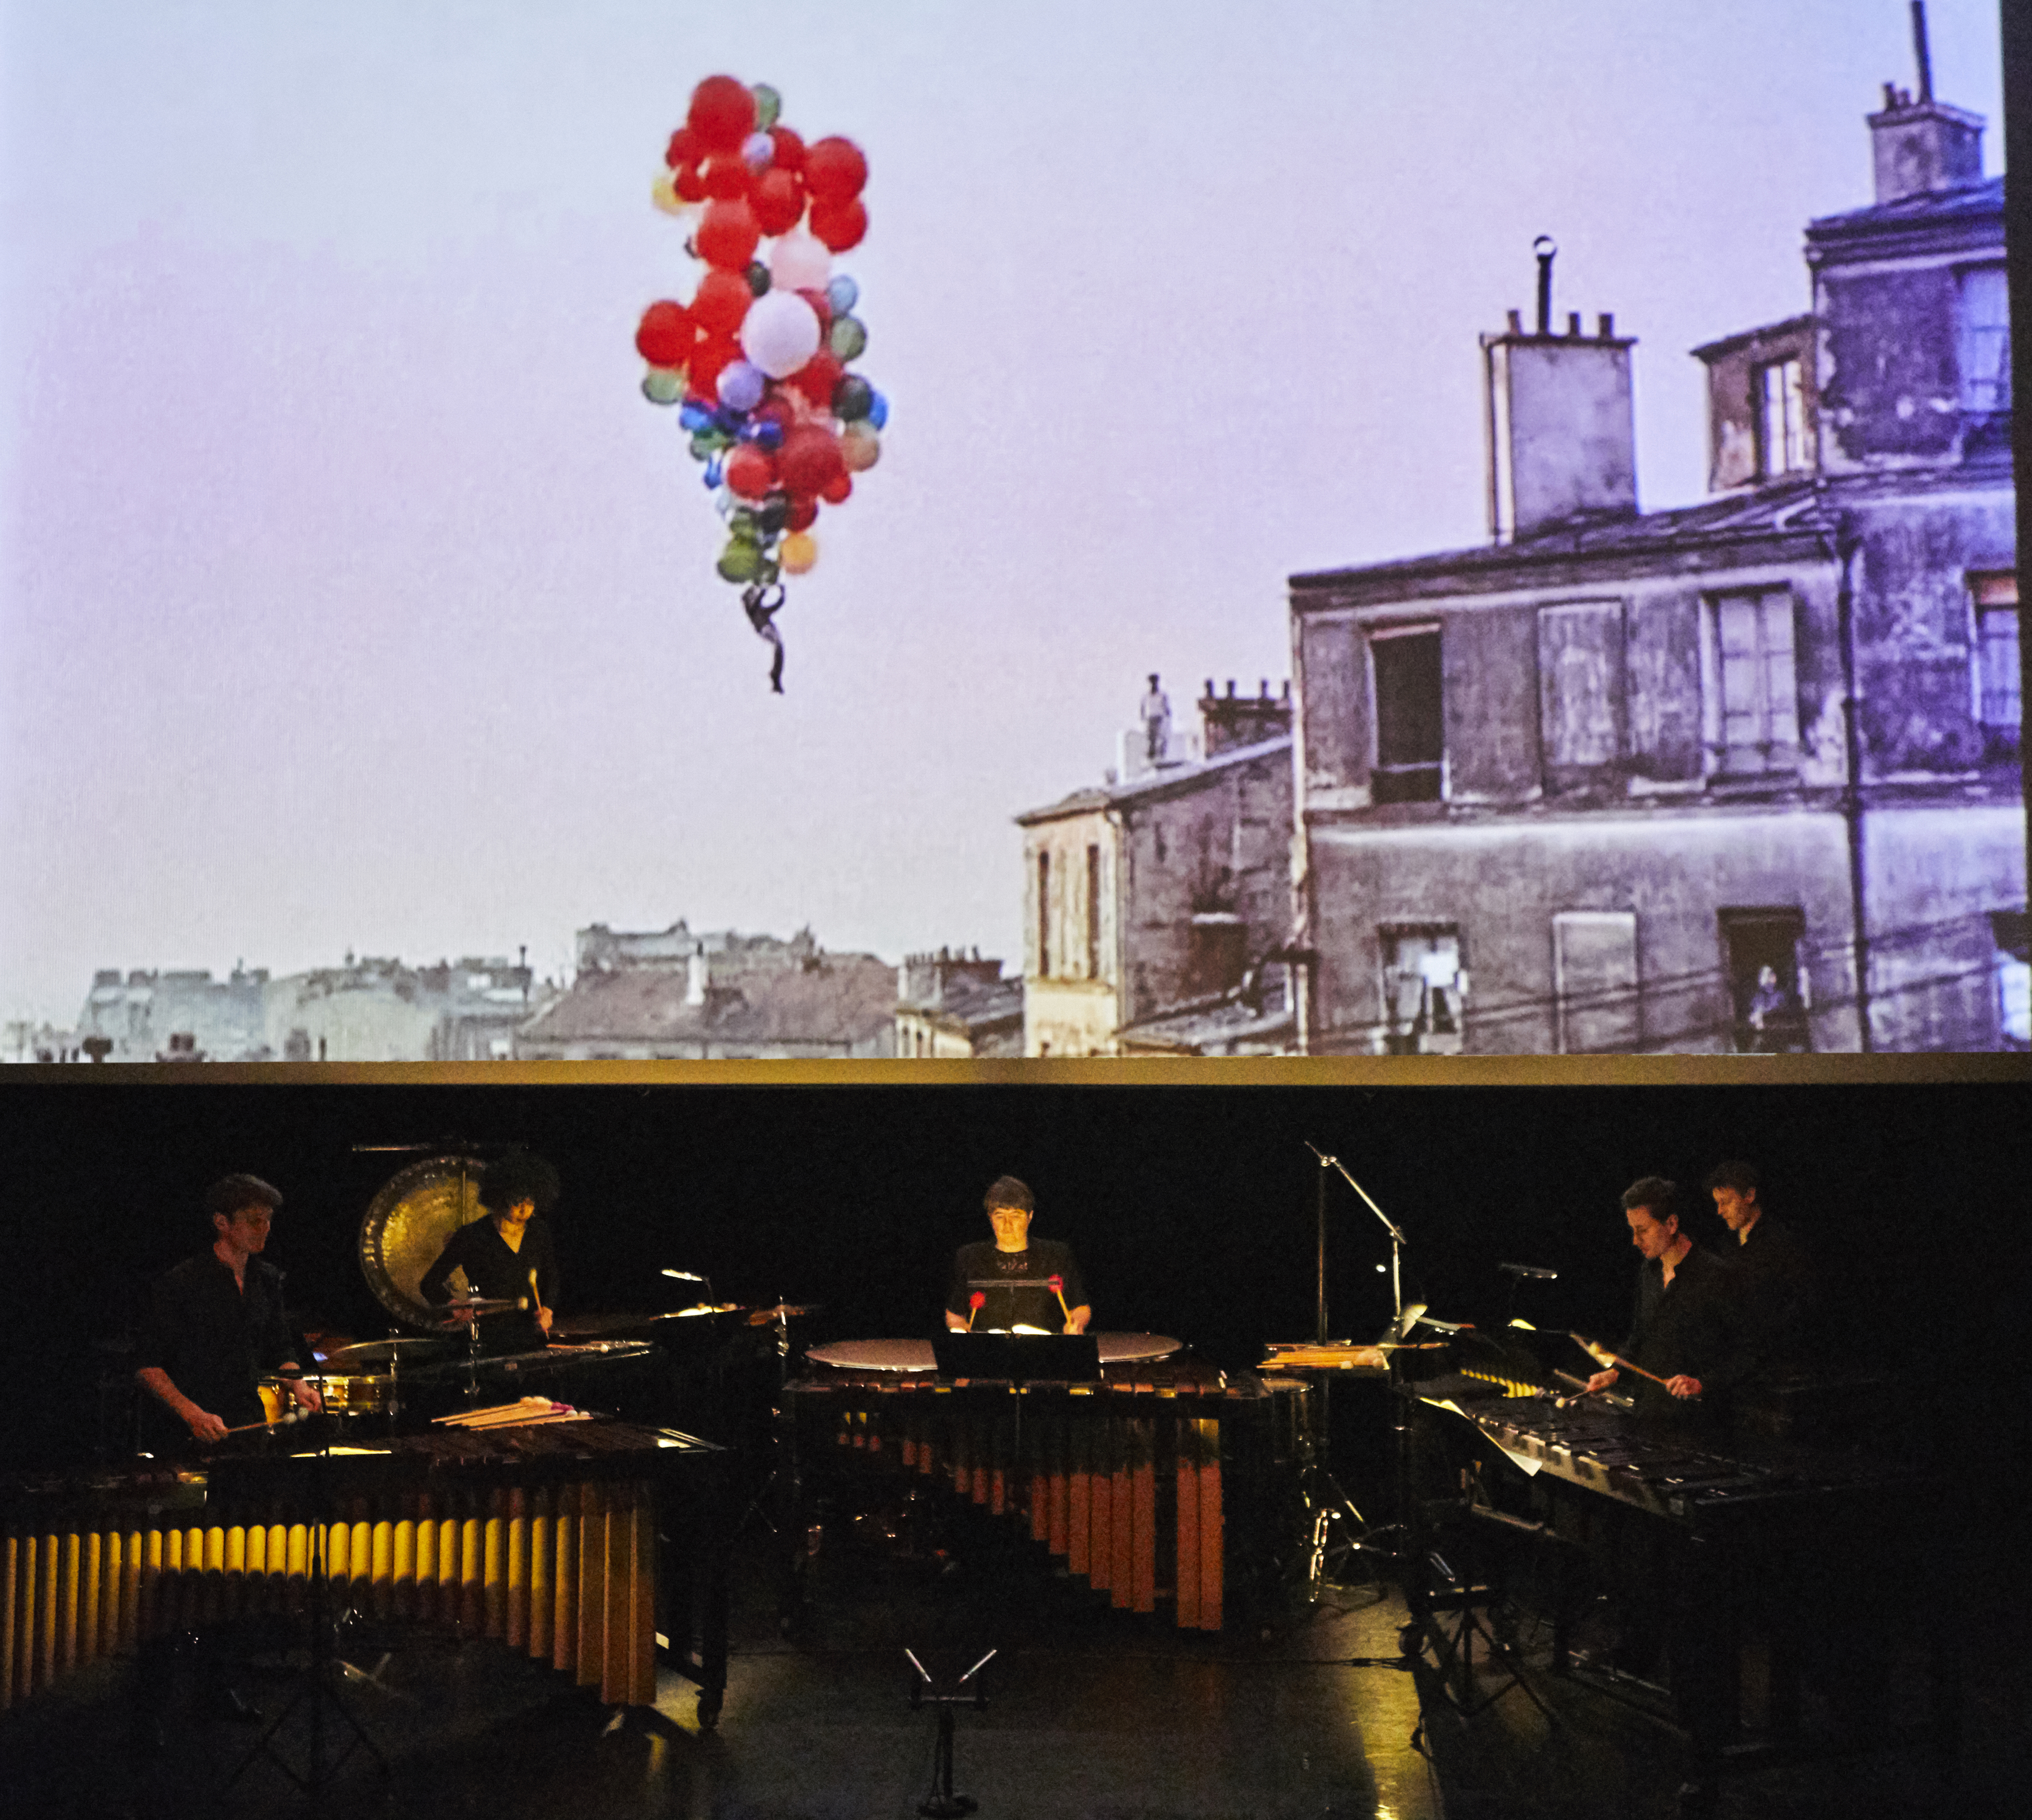 Le Ballon Rouge – Percussions Claviers de Lyon